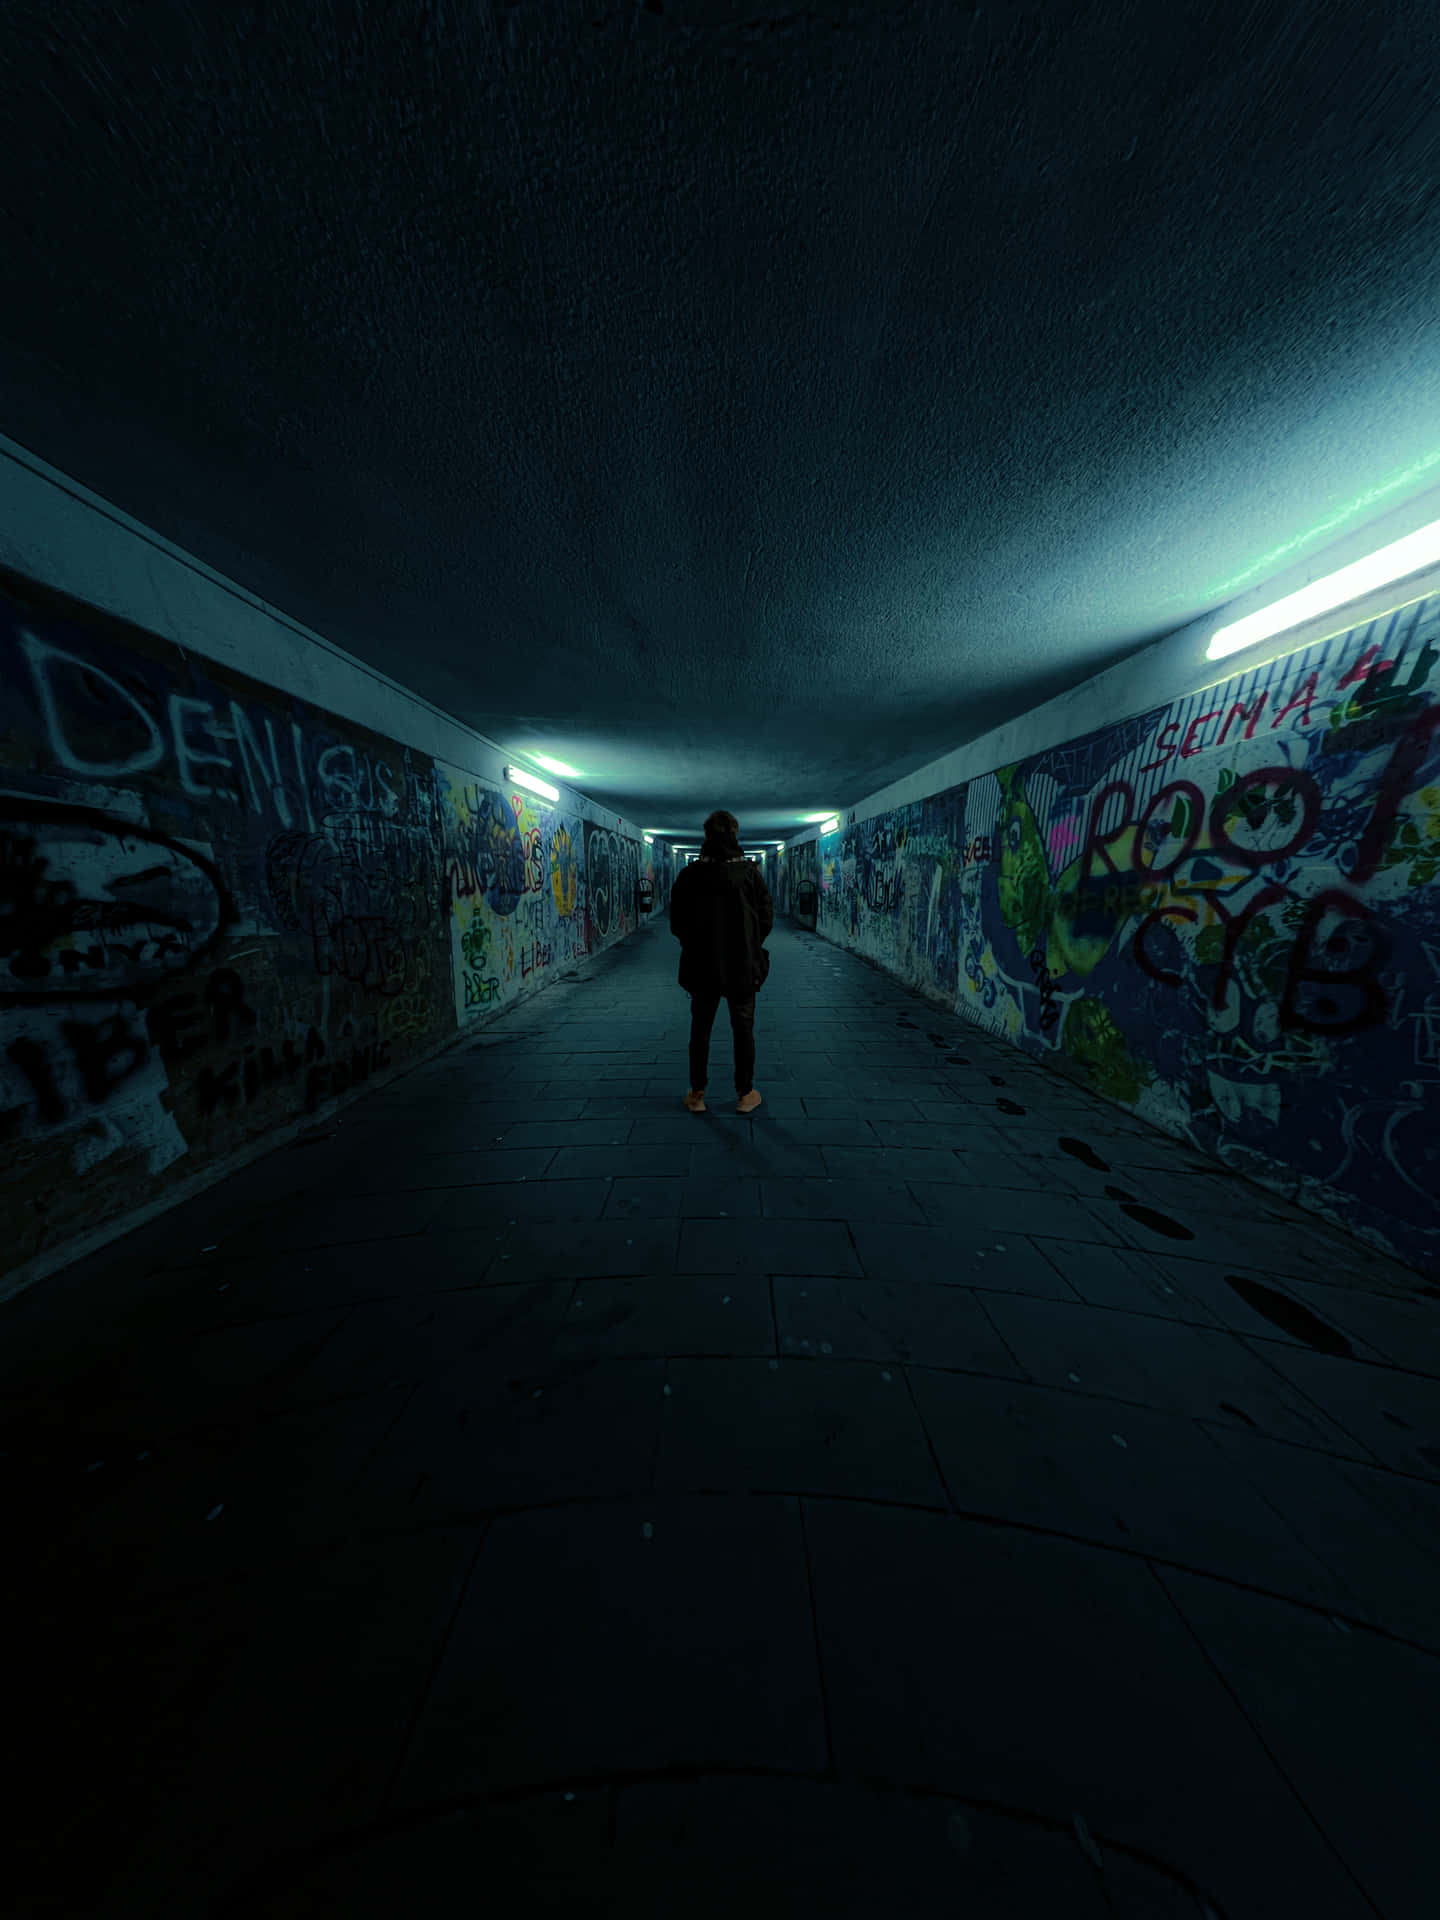 Caption: A Mysterious Stairway in a Dark Underground Tunnel Wallpaper